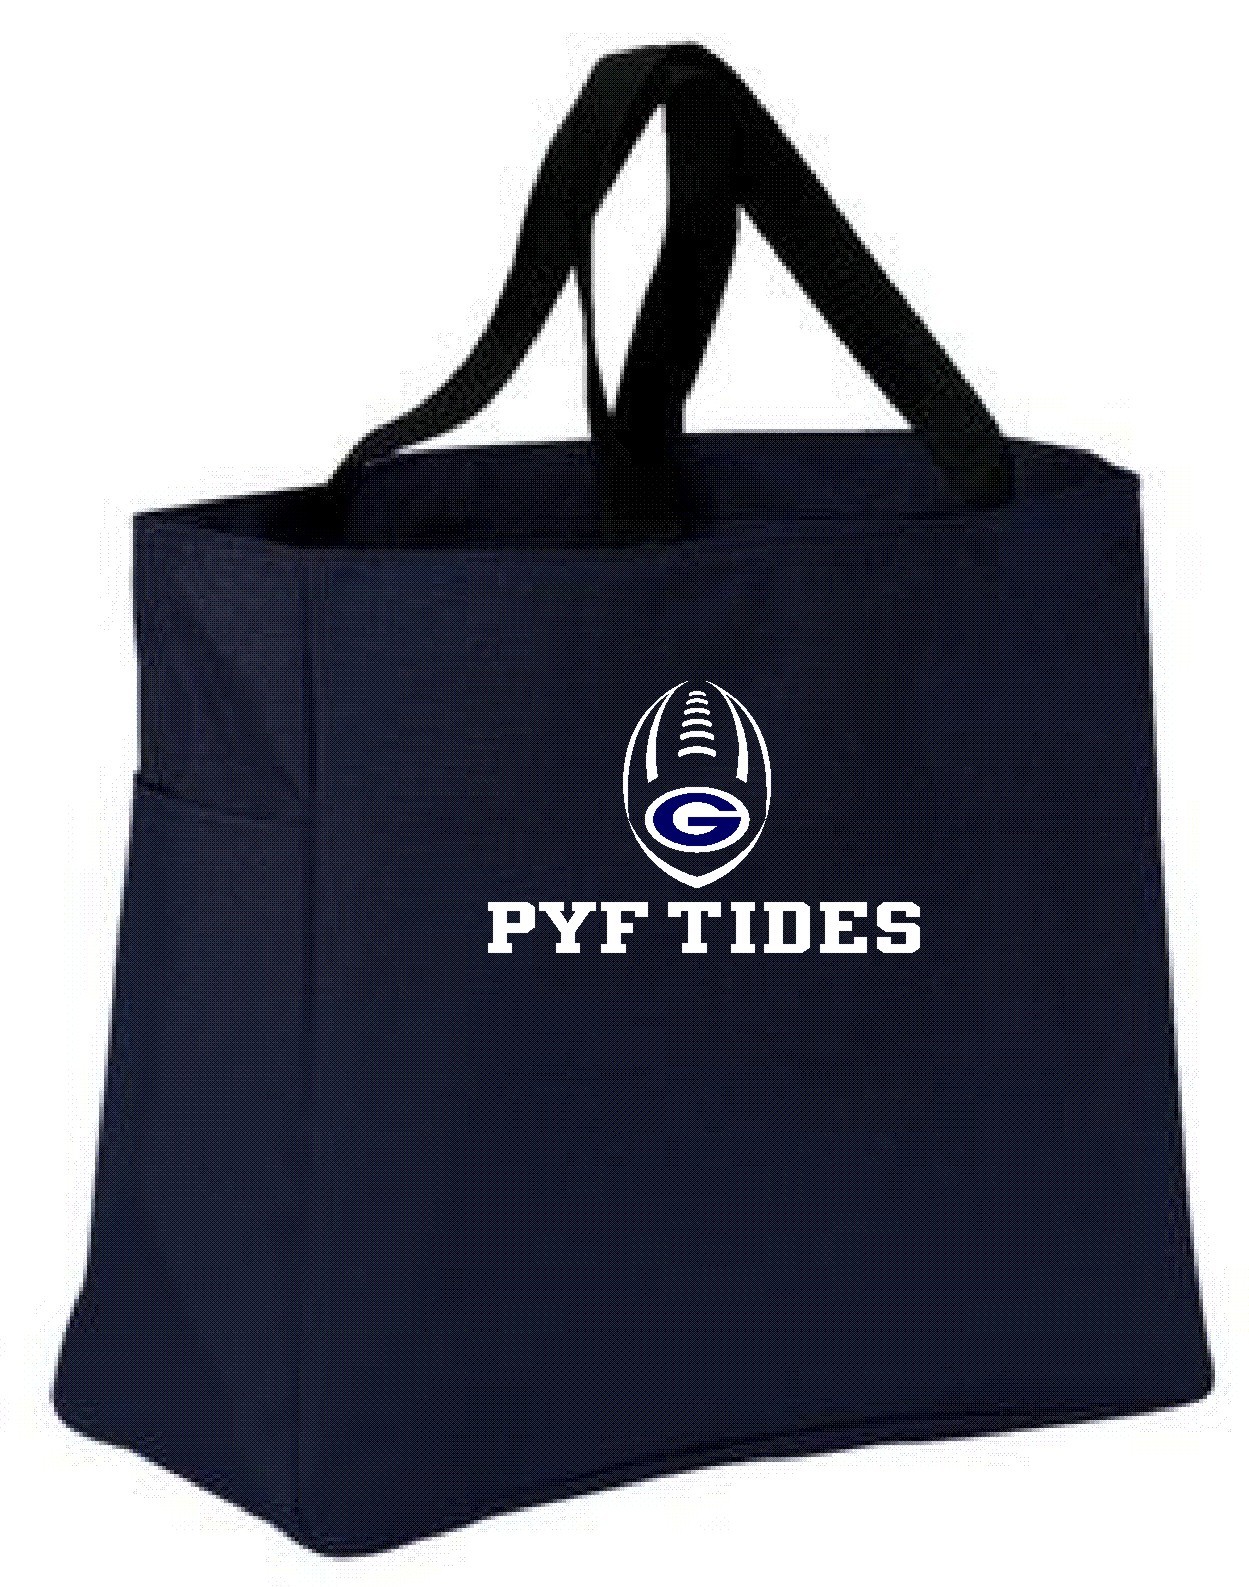 PYF Tides Tote Bag